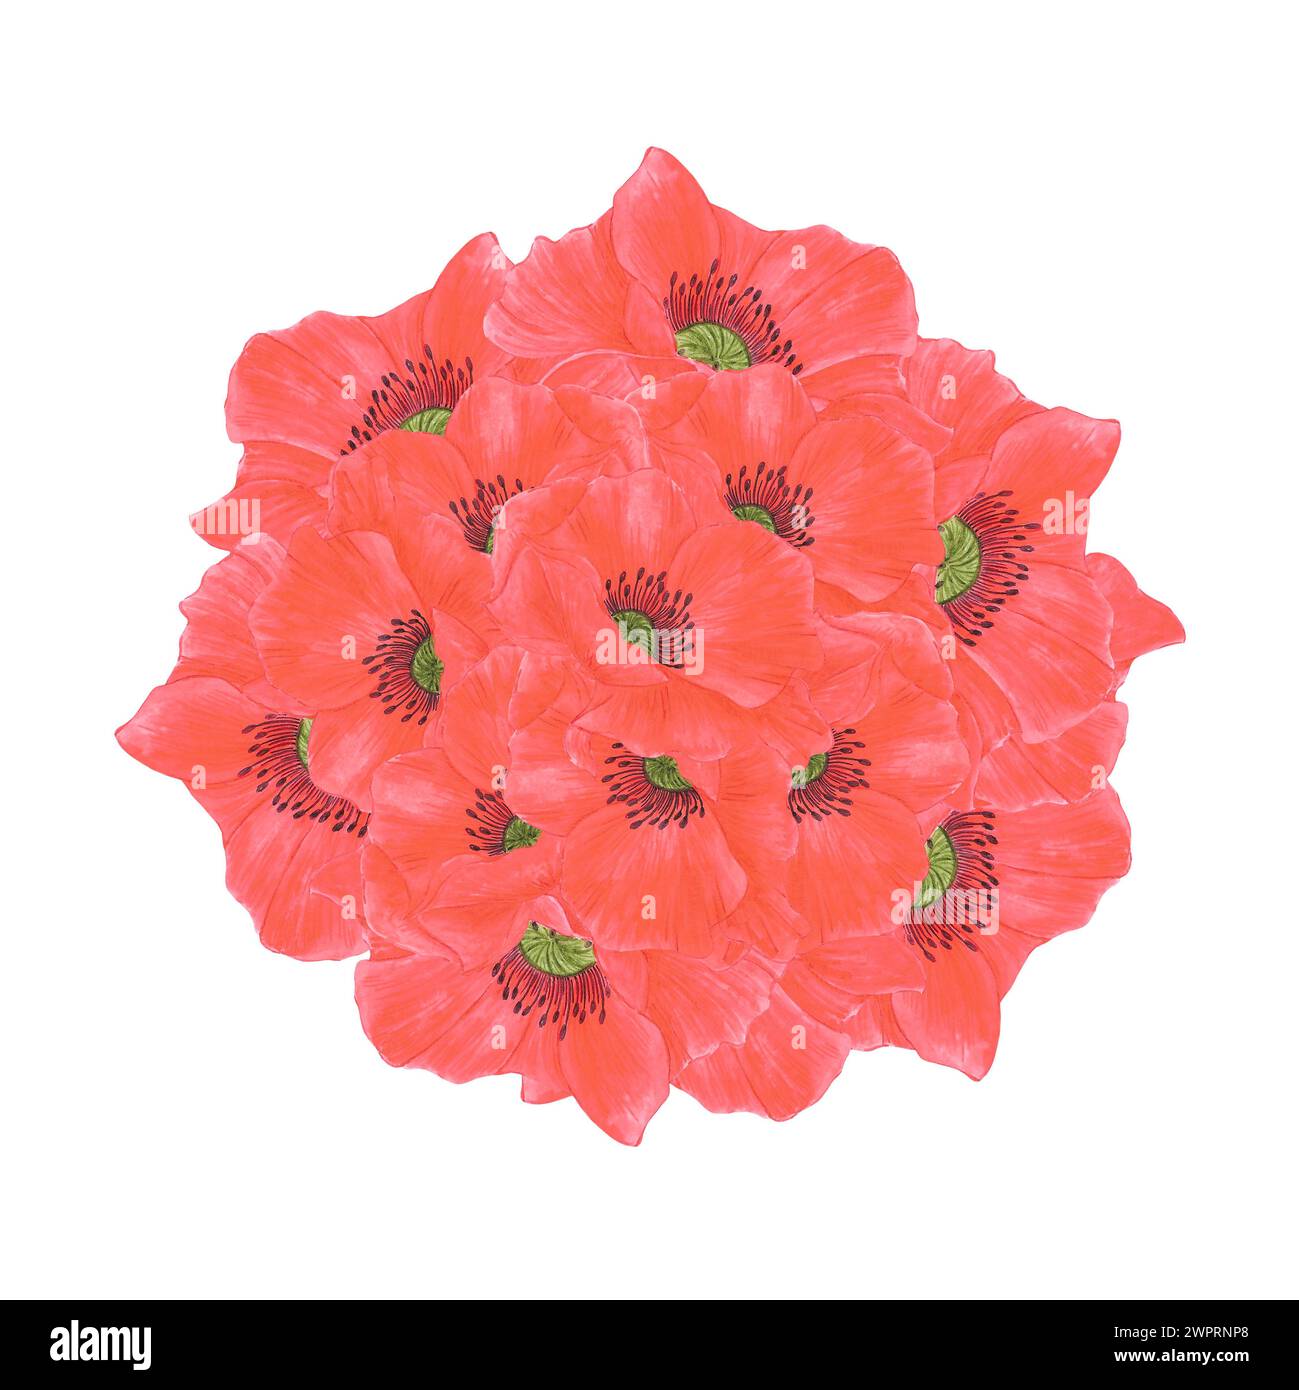 Bouquet de fleurs de coquelicot rouge dessiné à l'aquarelle à la main isolé sur fond blanc. Peut être utilisé pour les cartes postales, affiches et autres produits imprimés Banque D'Images